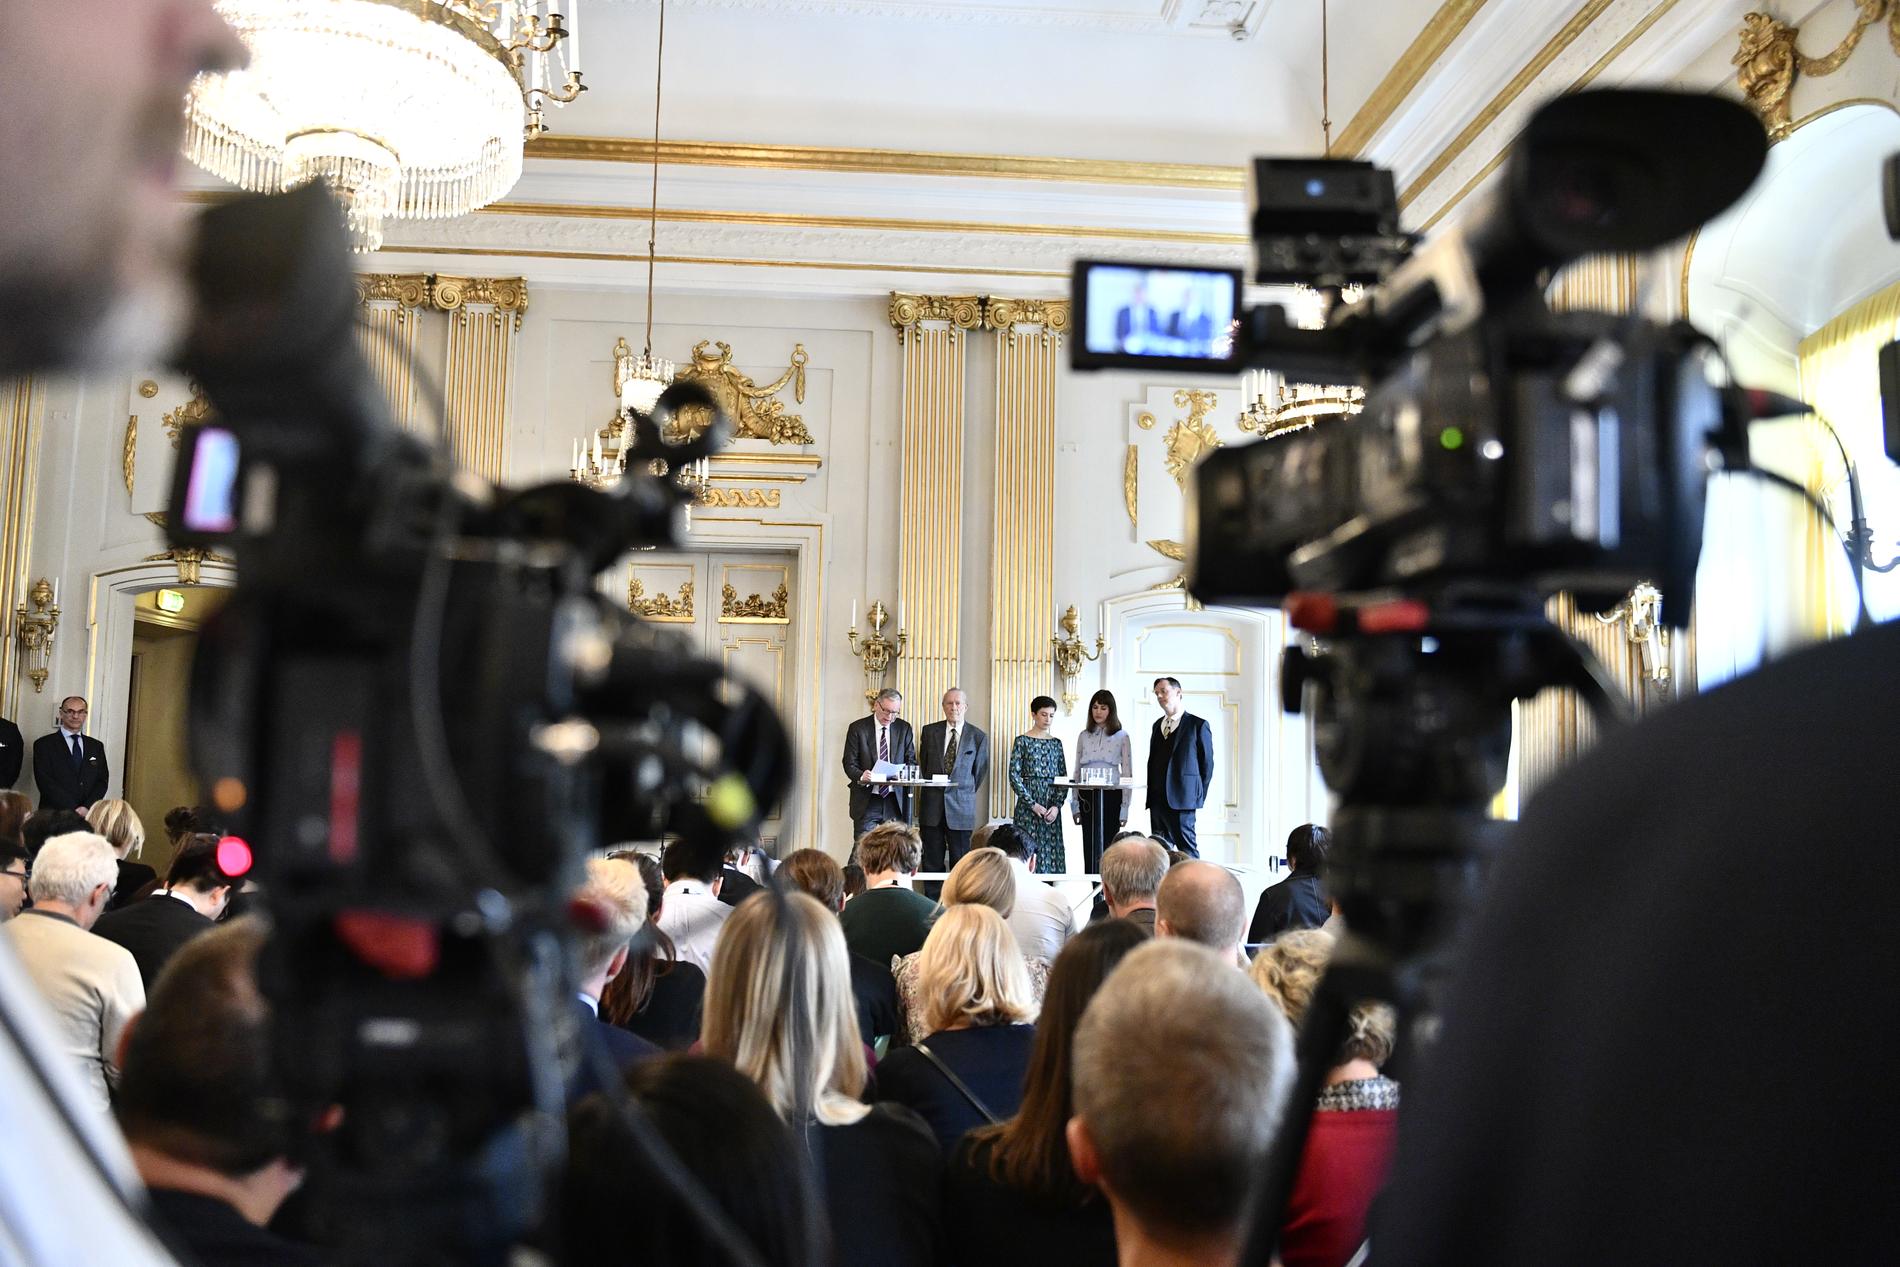 2019 presenterades två Nobelpristagare, Peter Handke och Olga Tokarczuk, av två ordinarie ledamöter – Anders Olsson och Per Wästberg – och av tre externa sakkunniga – Rebecka Kärde, Mikaela Blomqvist och Henrik Petersen.